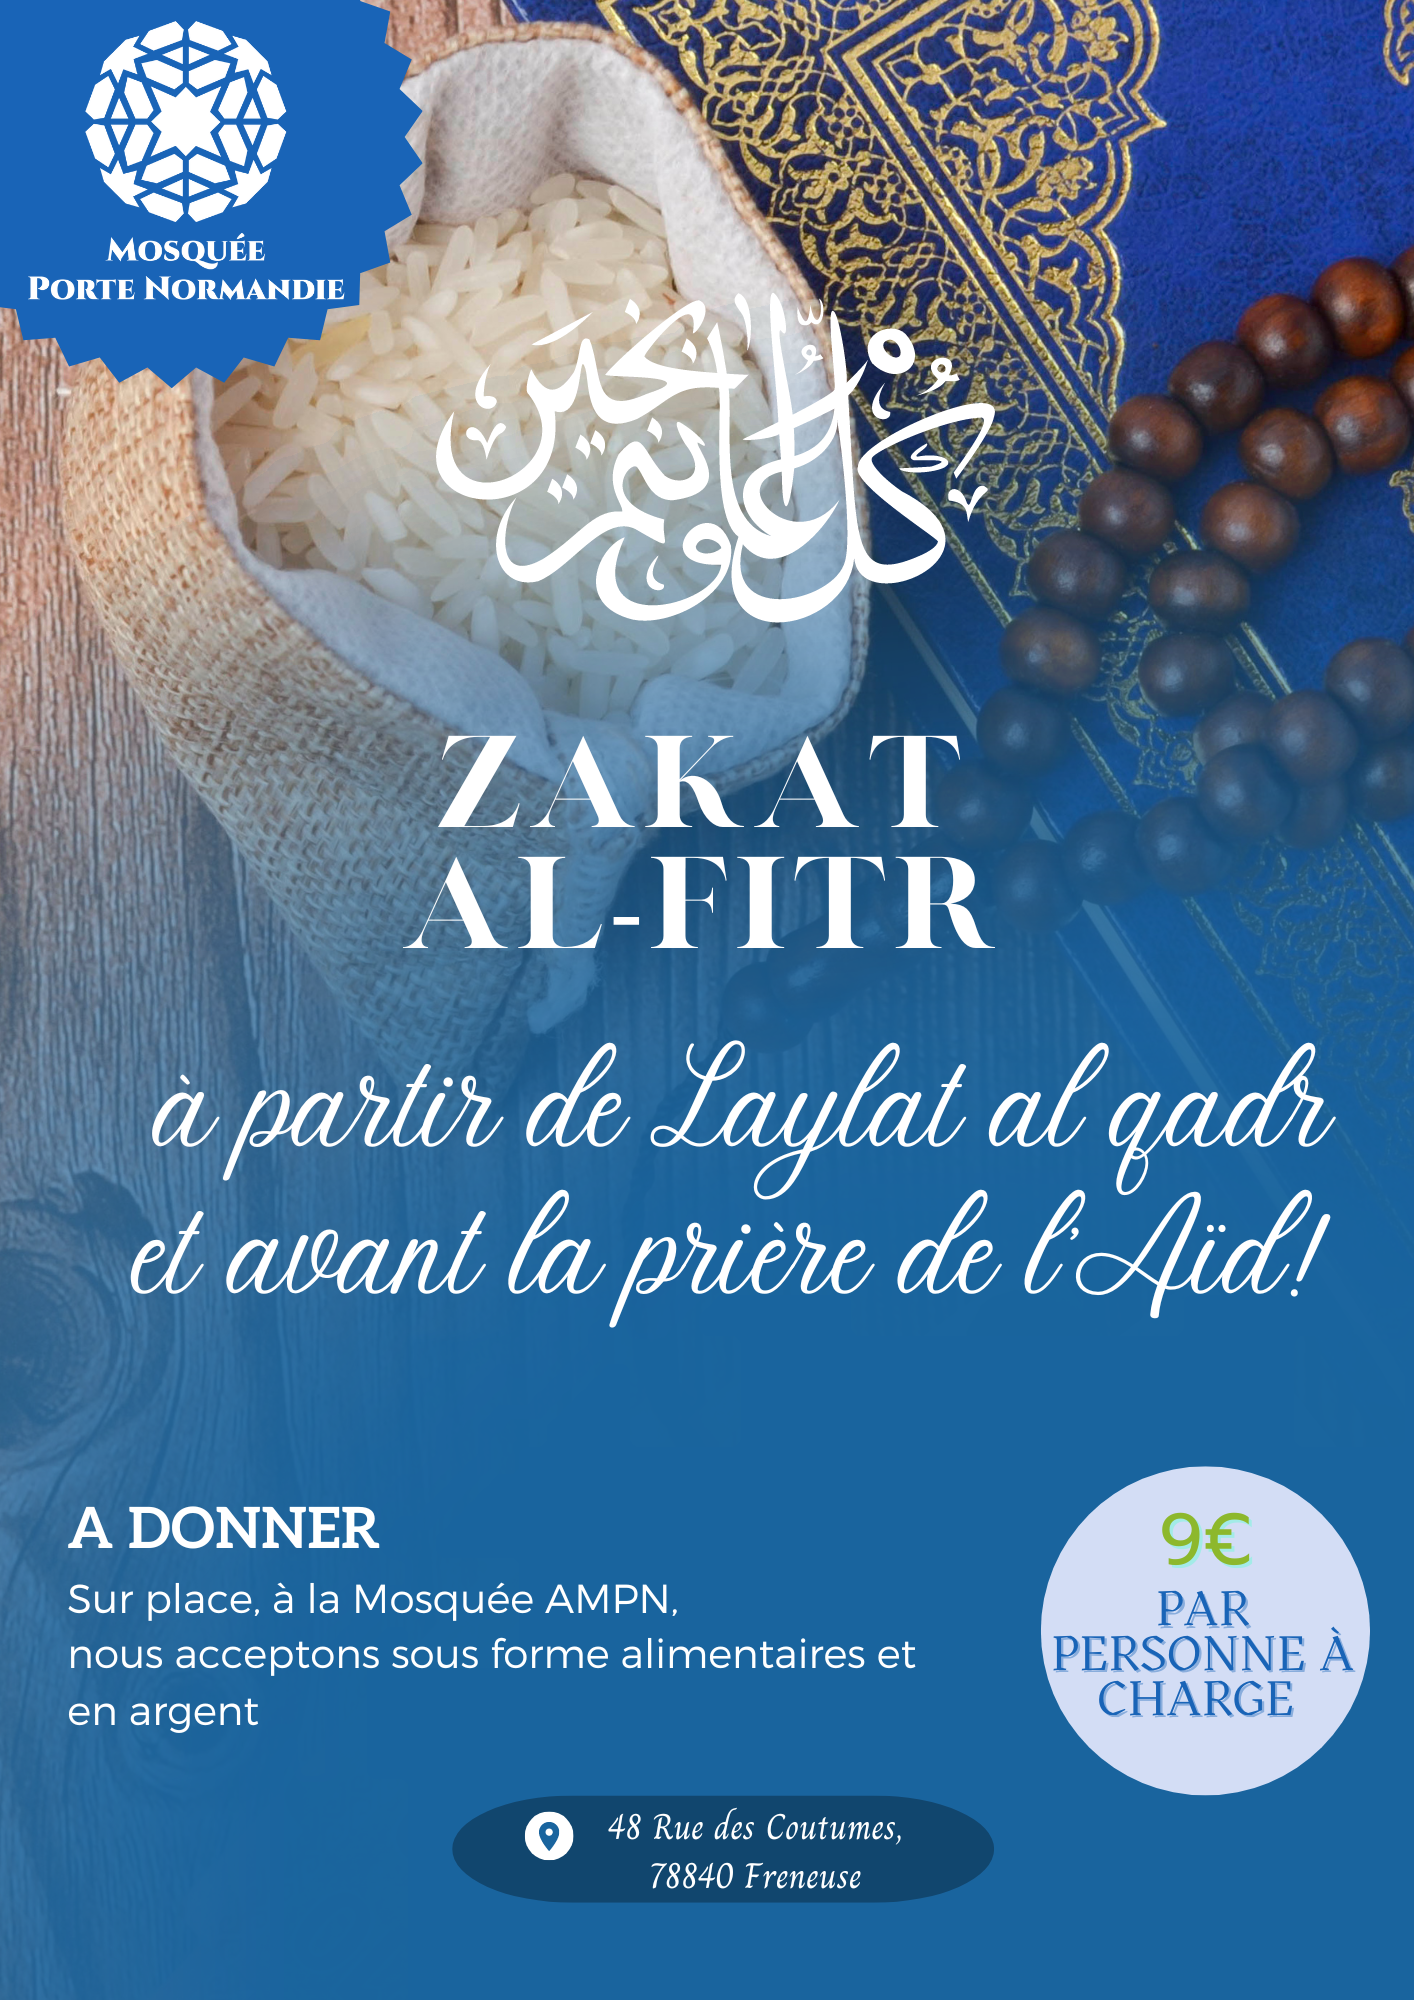 Featured image for “La Zakat al-Fitr, une nécessité:”